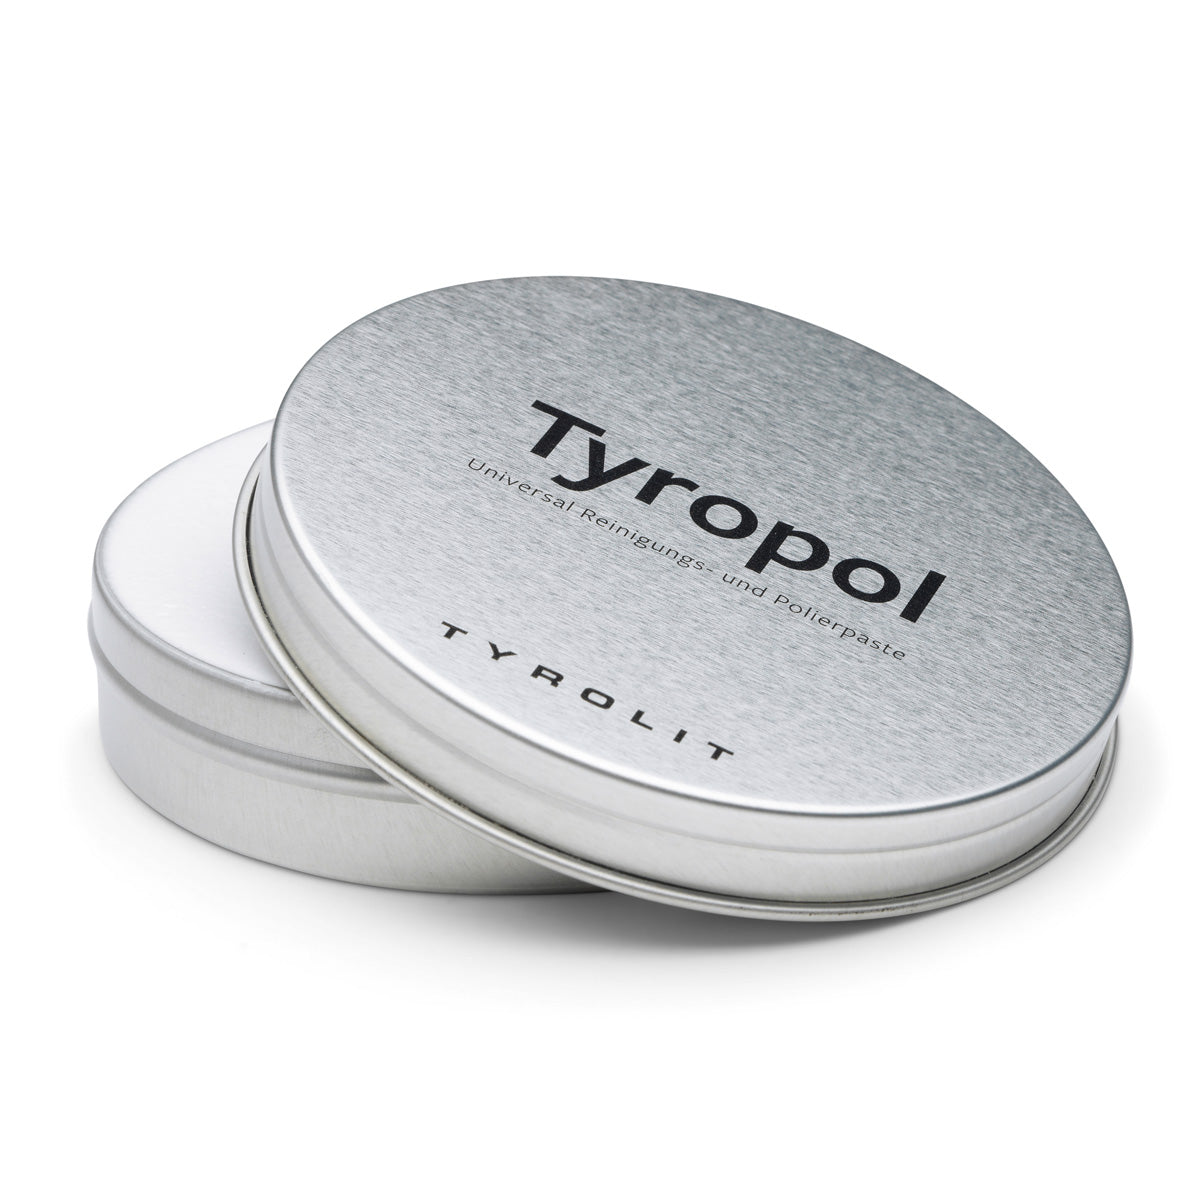 Hochwertige Universal Reinigungs- und Polierpaste Tyropol | Made in Austria